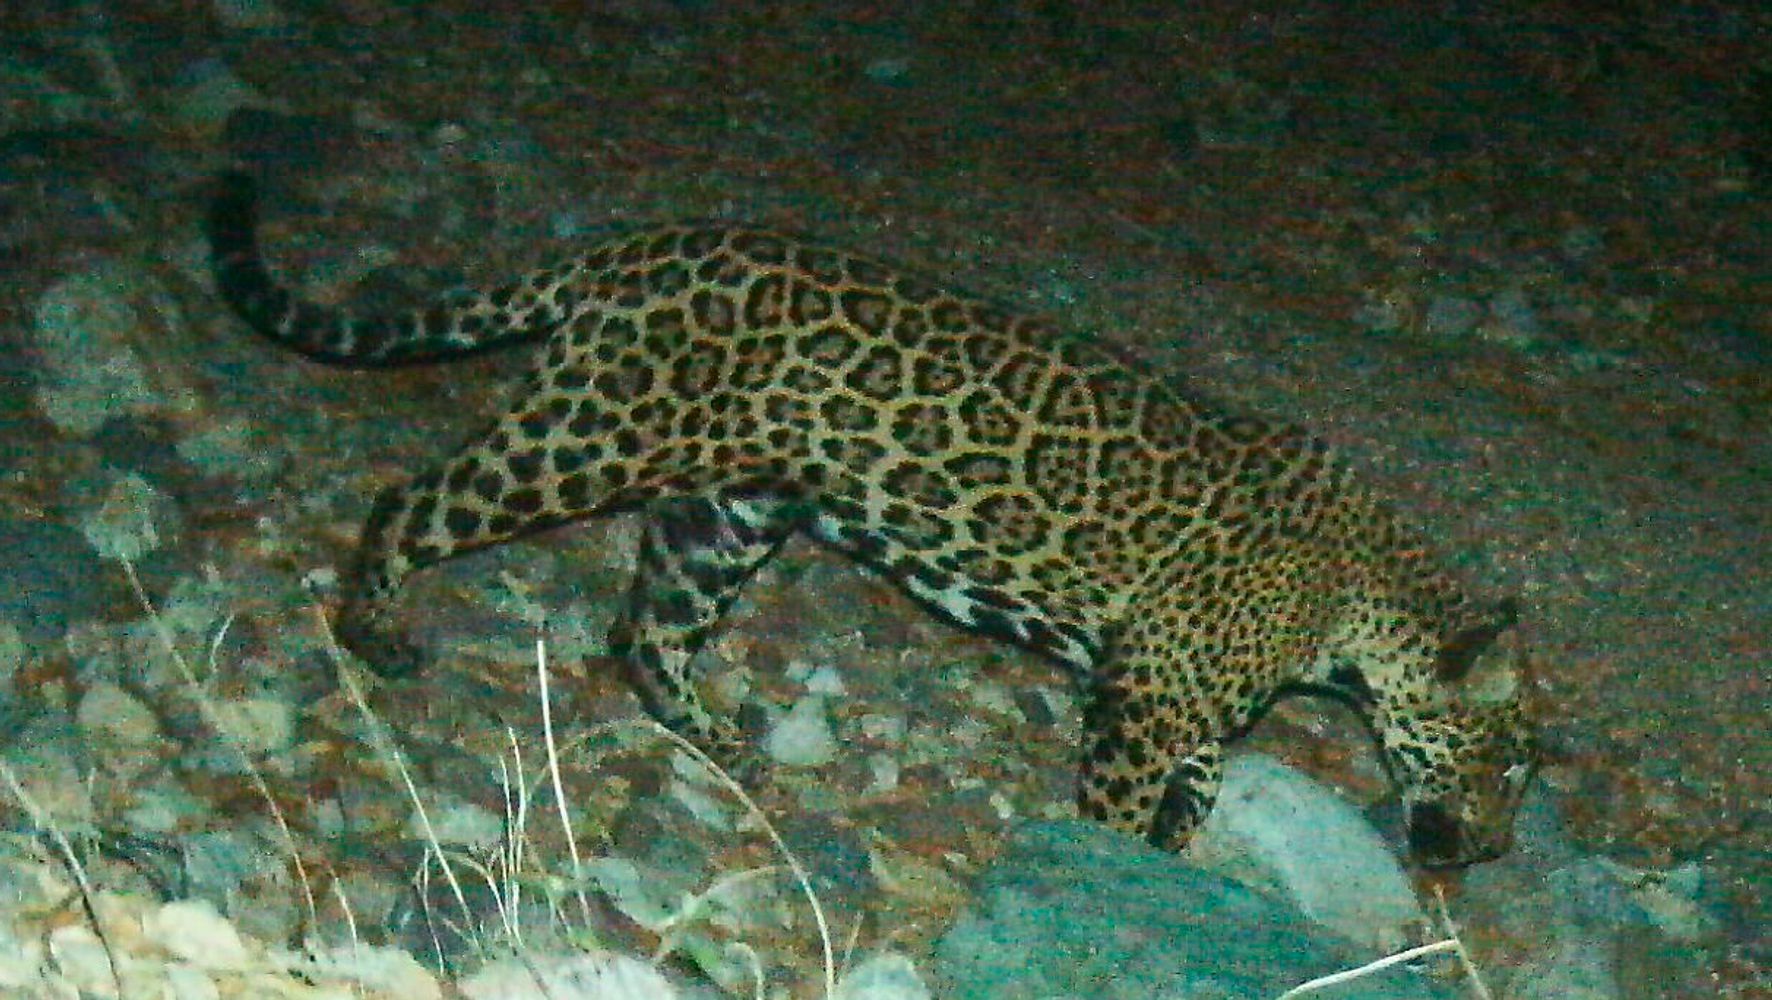 Famed Jaguar Photographed After Crossing U.S.-Mexico Border